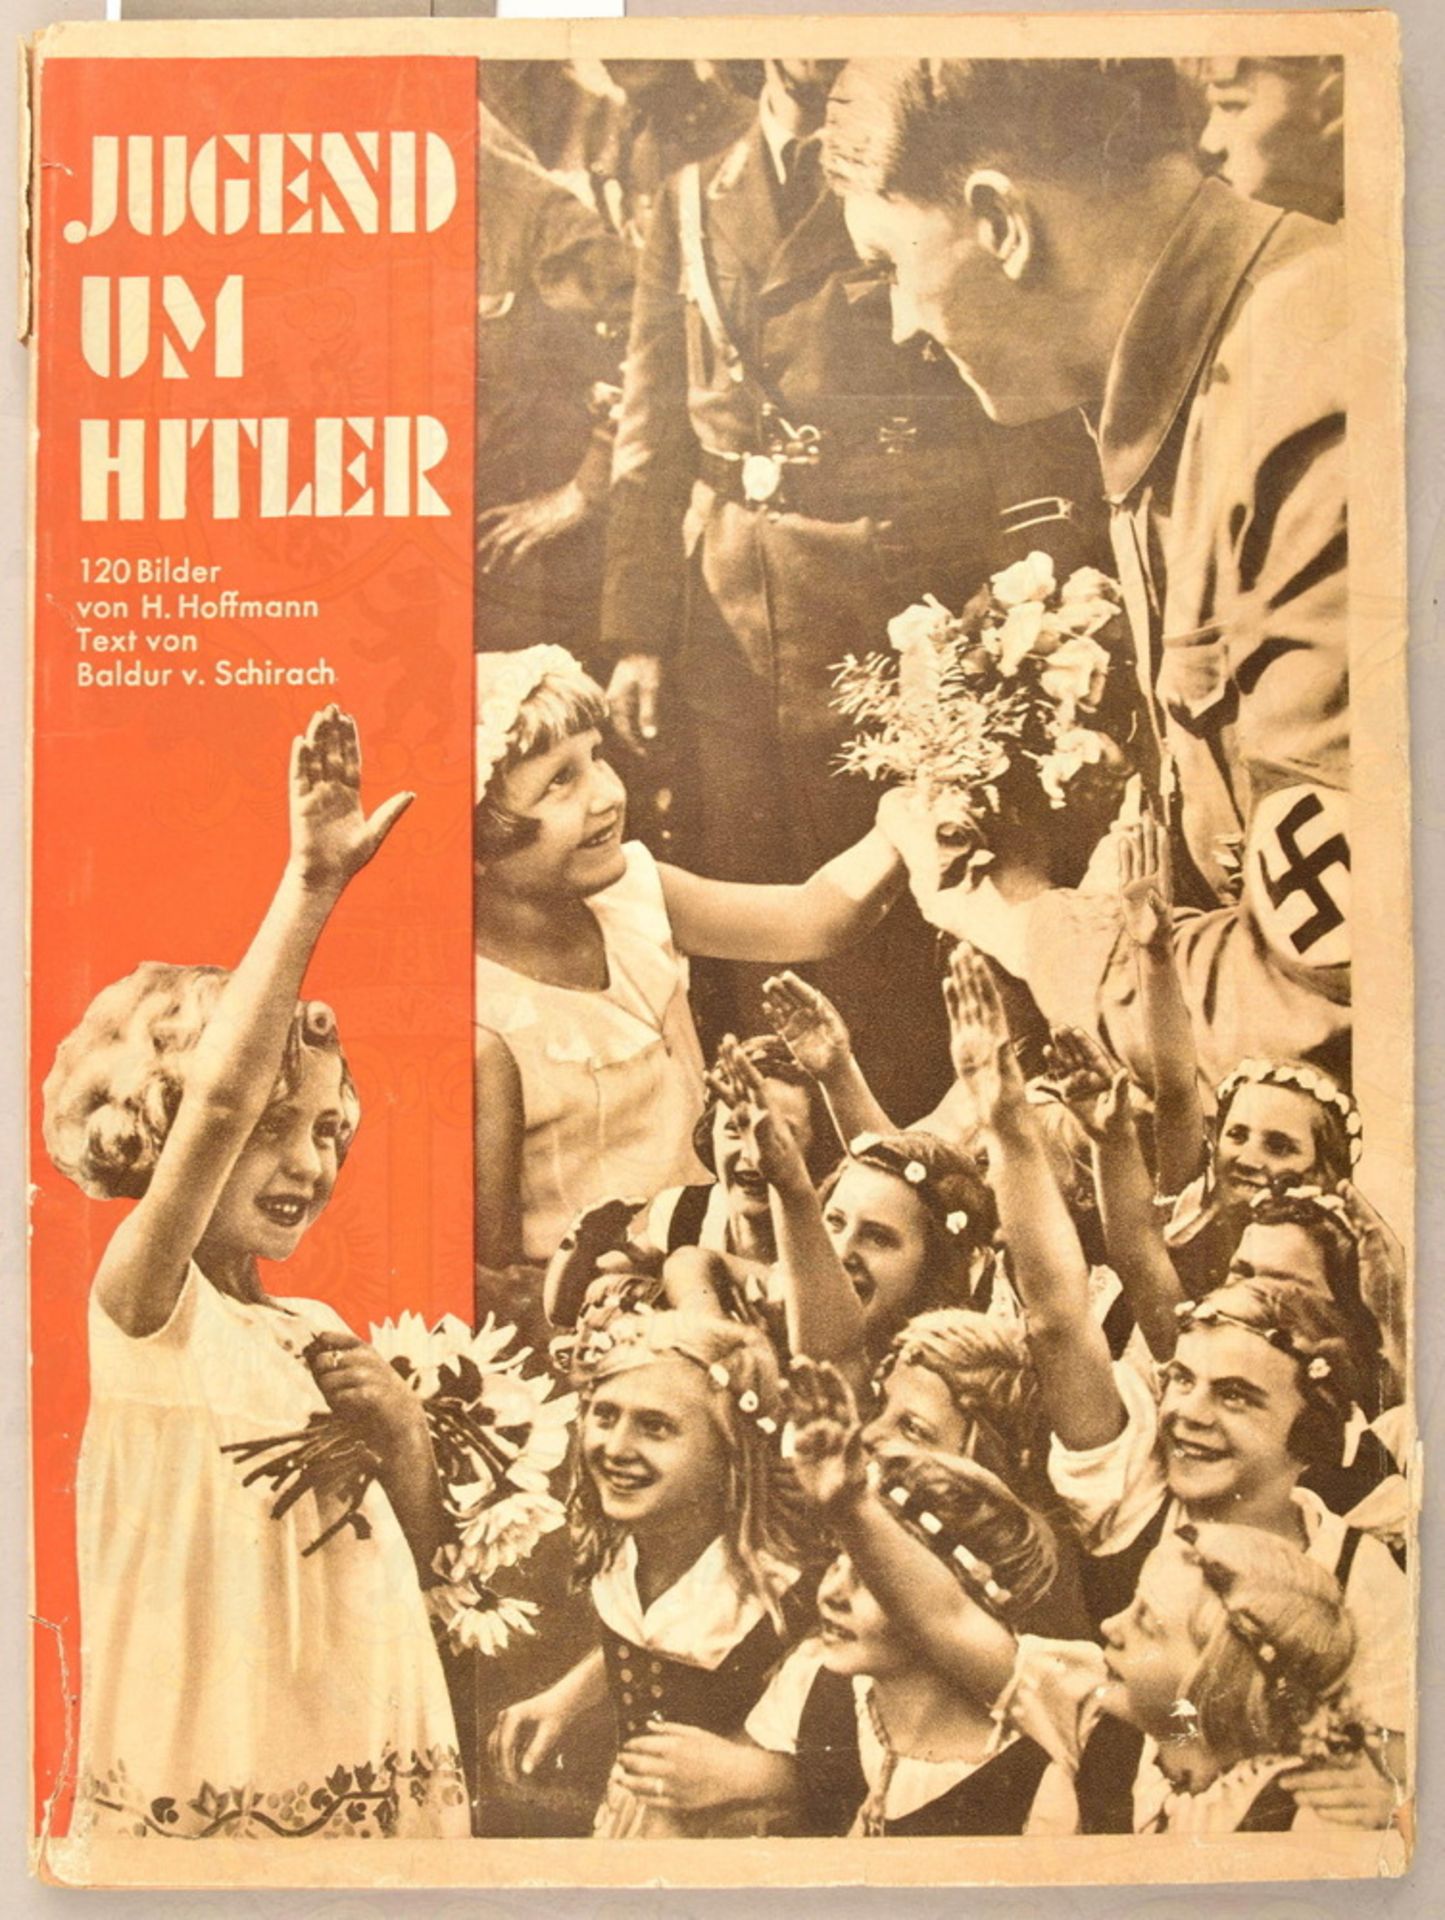 Hoffmann-Fotoband "Jugend um Hitler" - Image 2 of 4